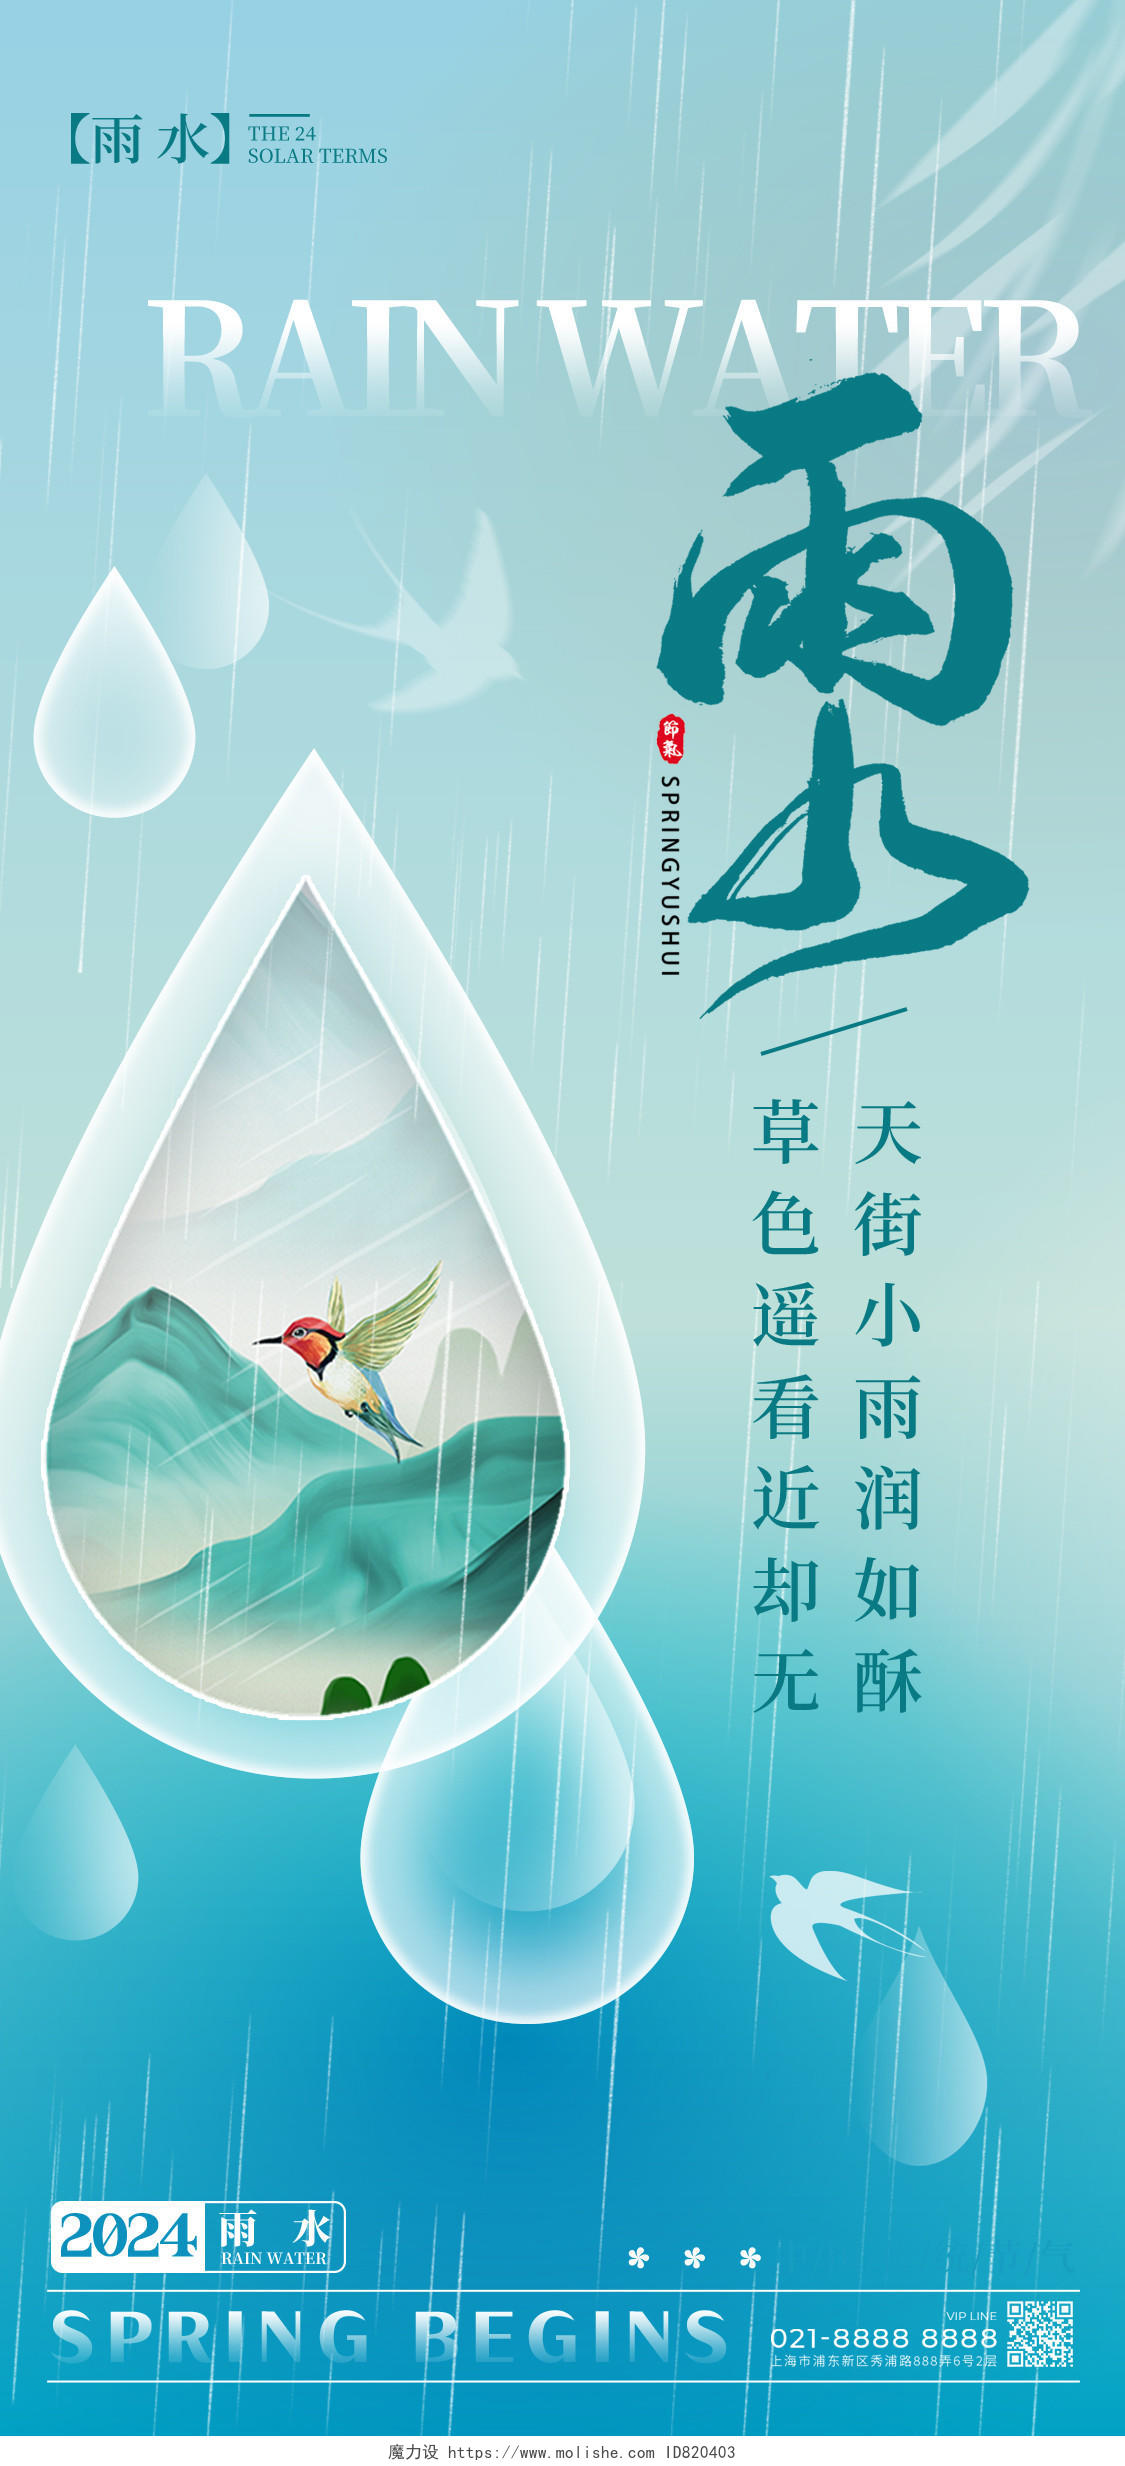 渐变色简约风格雨水雨水宣传海报雨水手机宣传海报节气海报